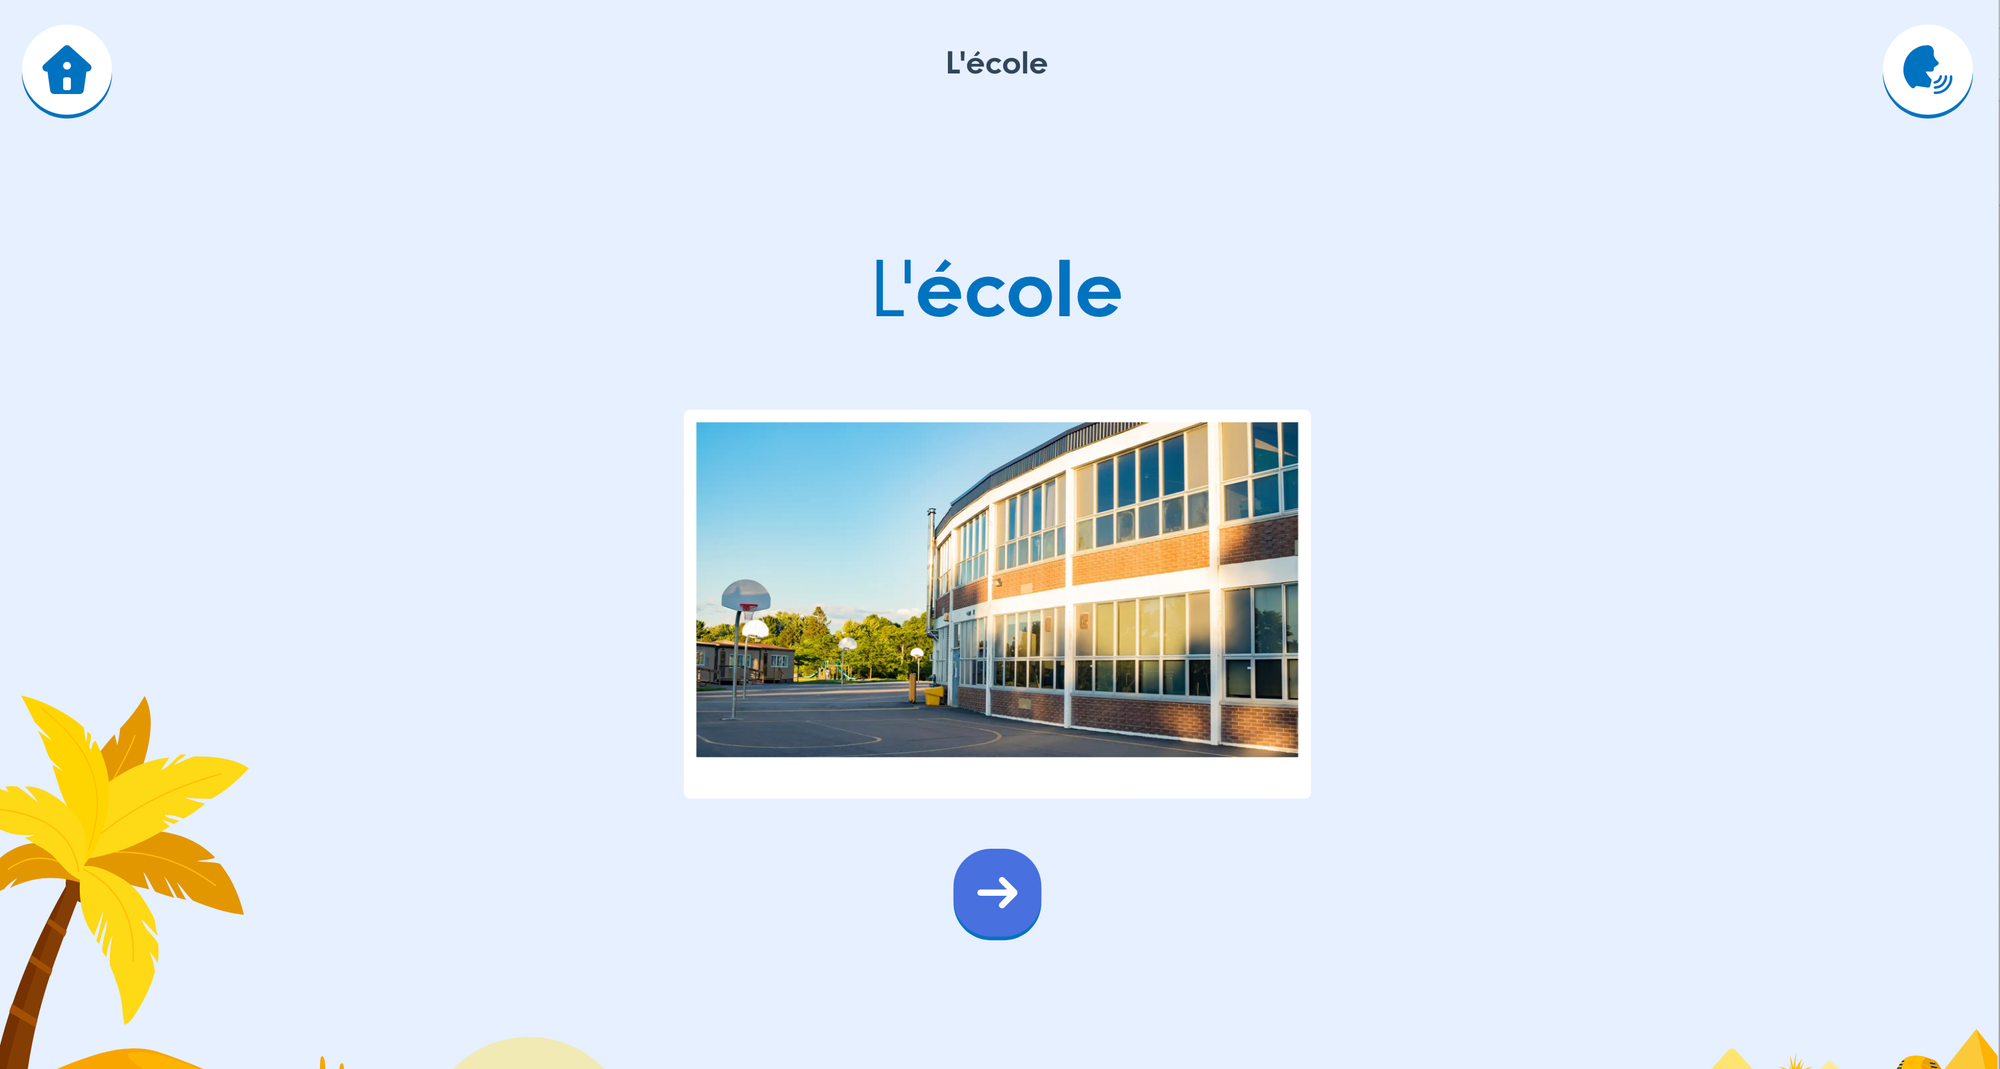 Sur l’interface élève, écran qui indique “L’école” pour présenter le vocabulaire que l’élève est sur le point d’apprendre.